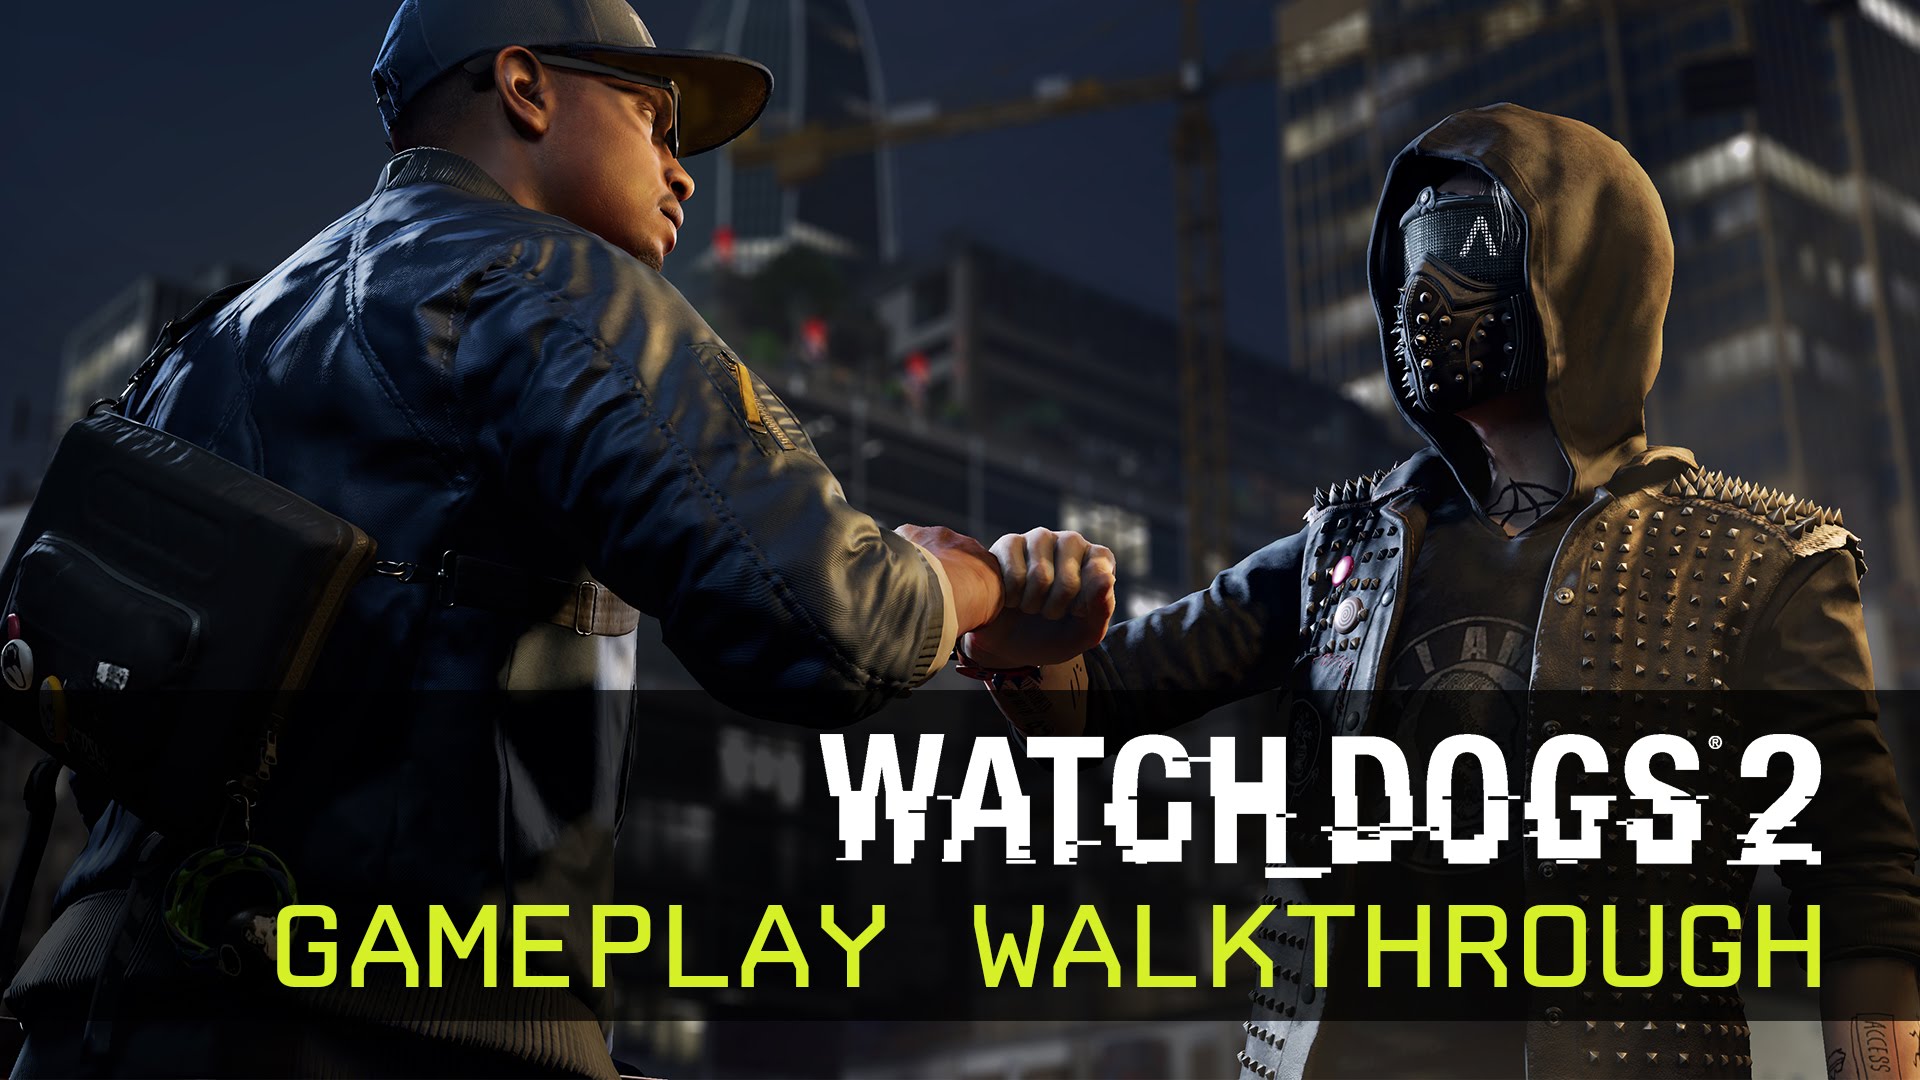 Watch Dogs 2 - Gameplay Walkthrough - E3 2016